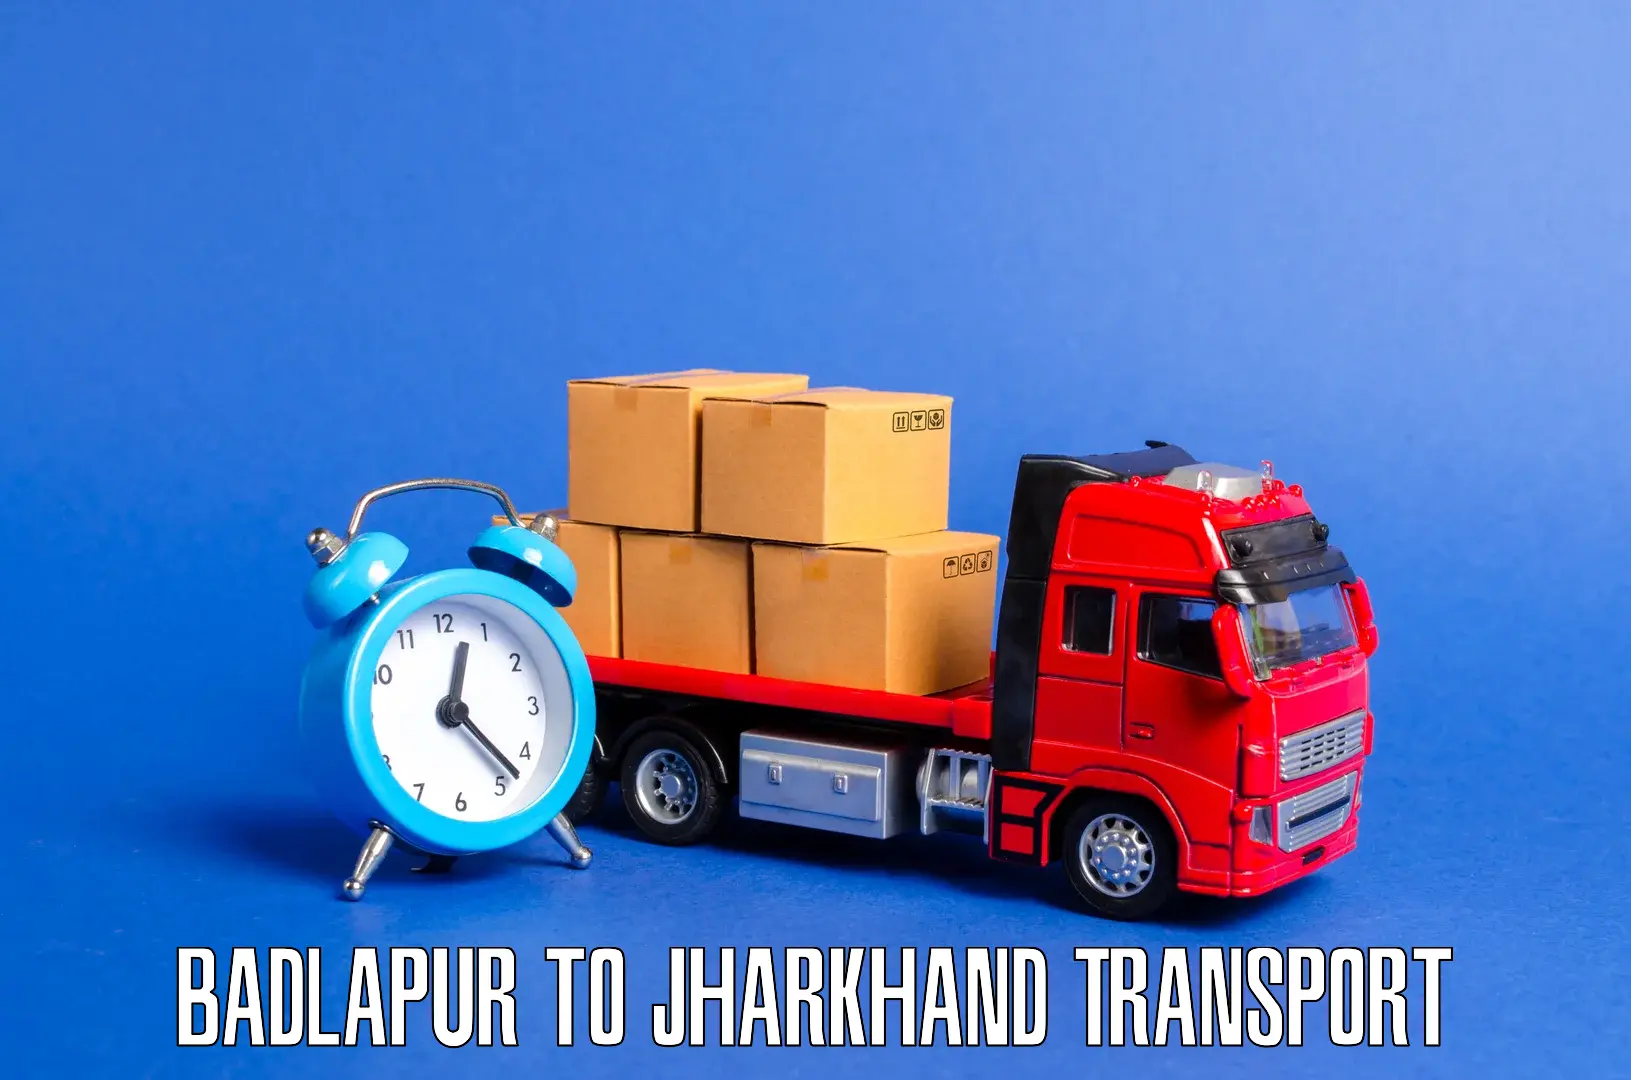 Land transport services Badlapur to Medininagar